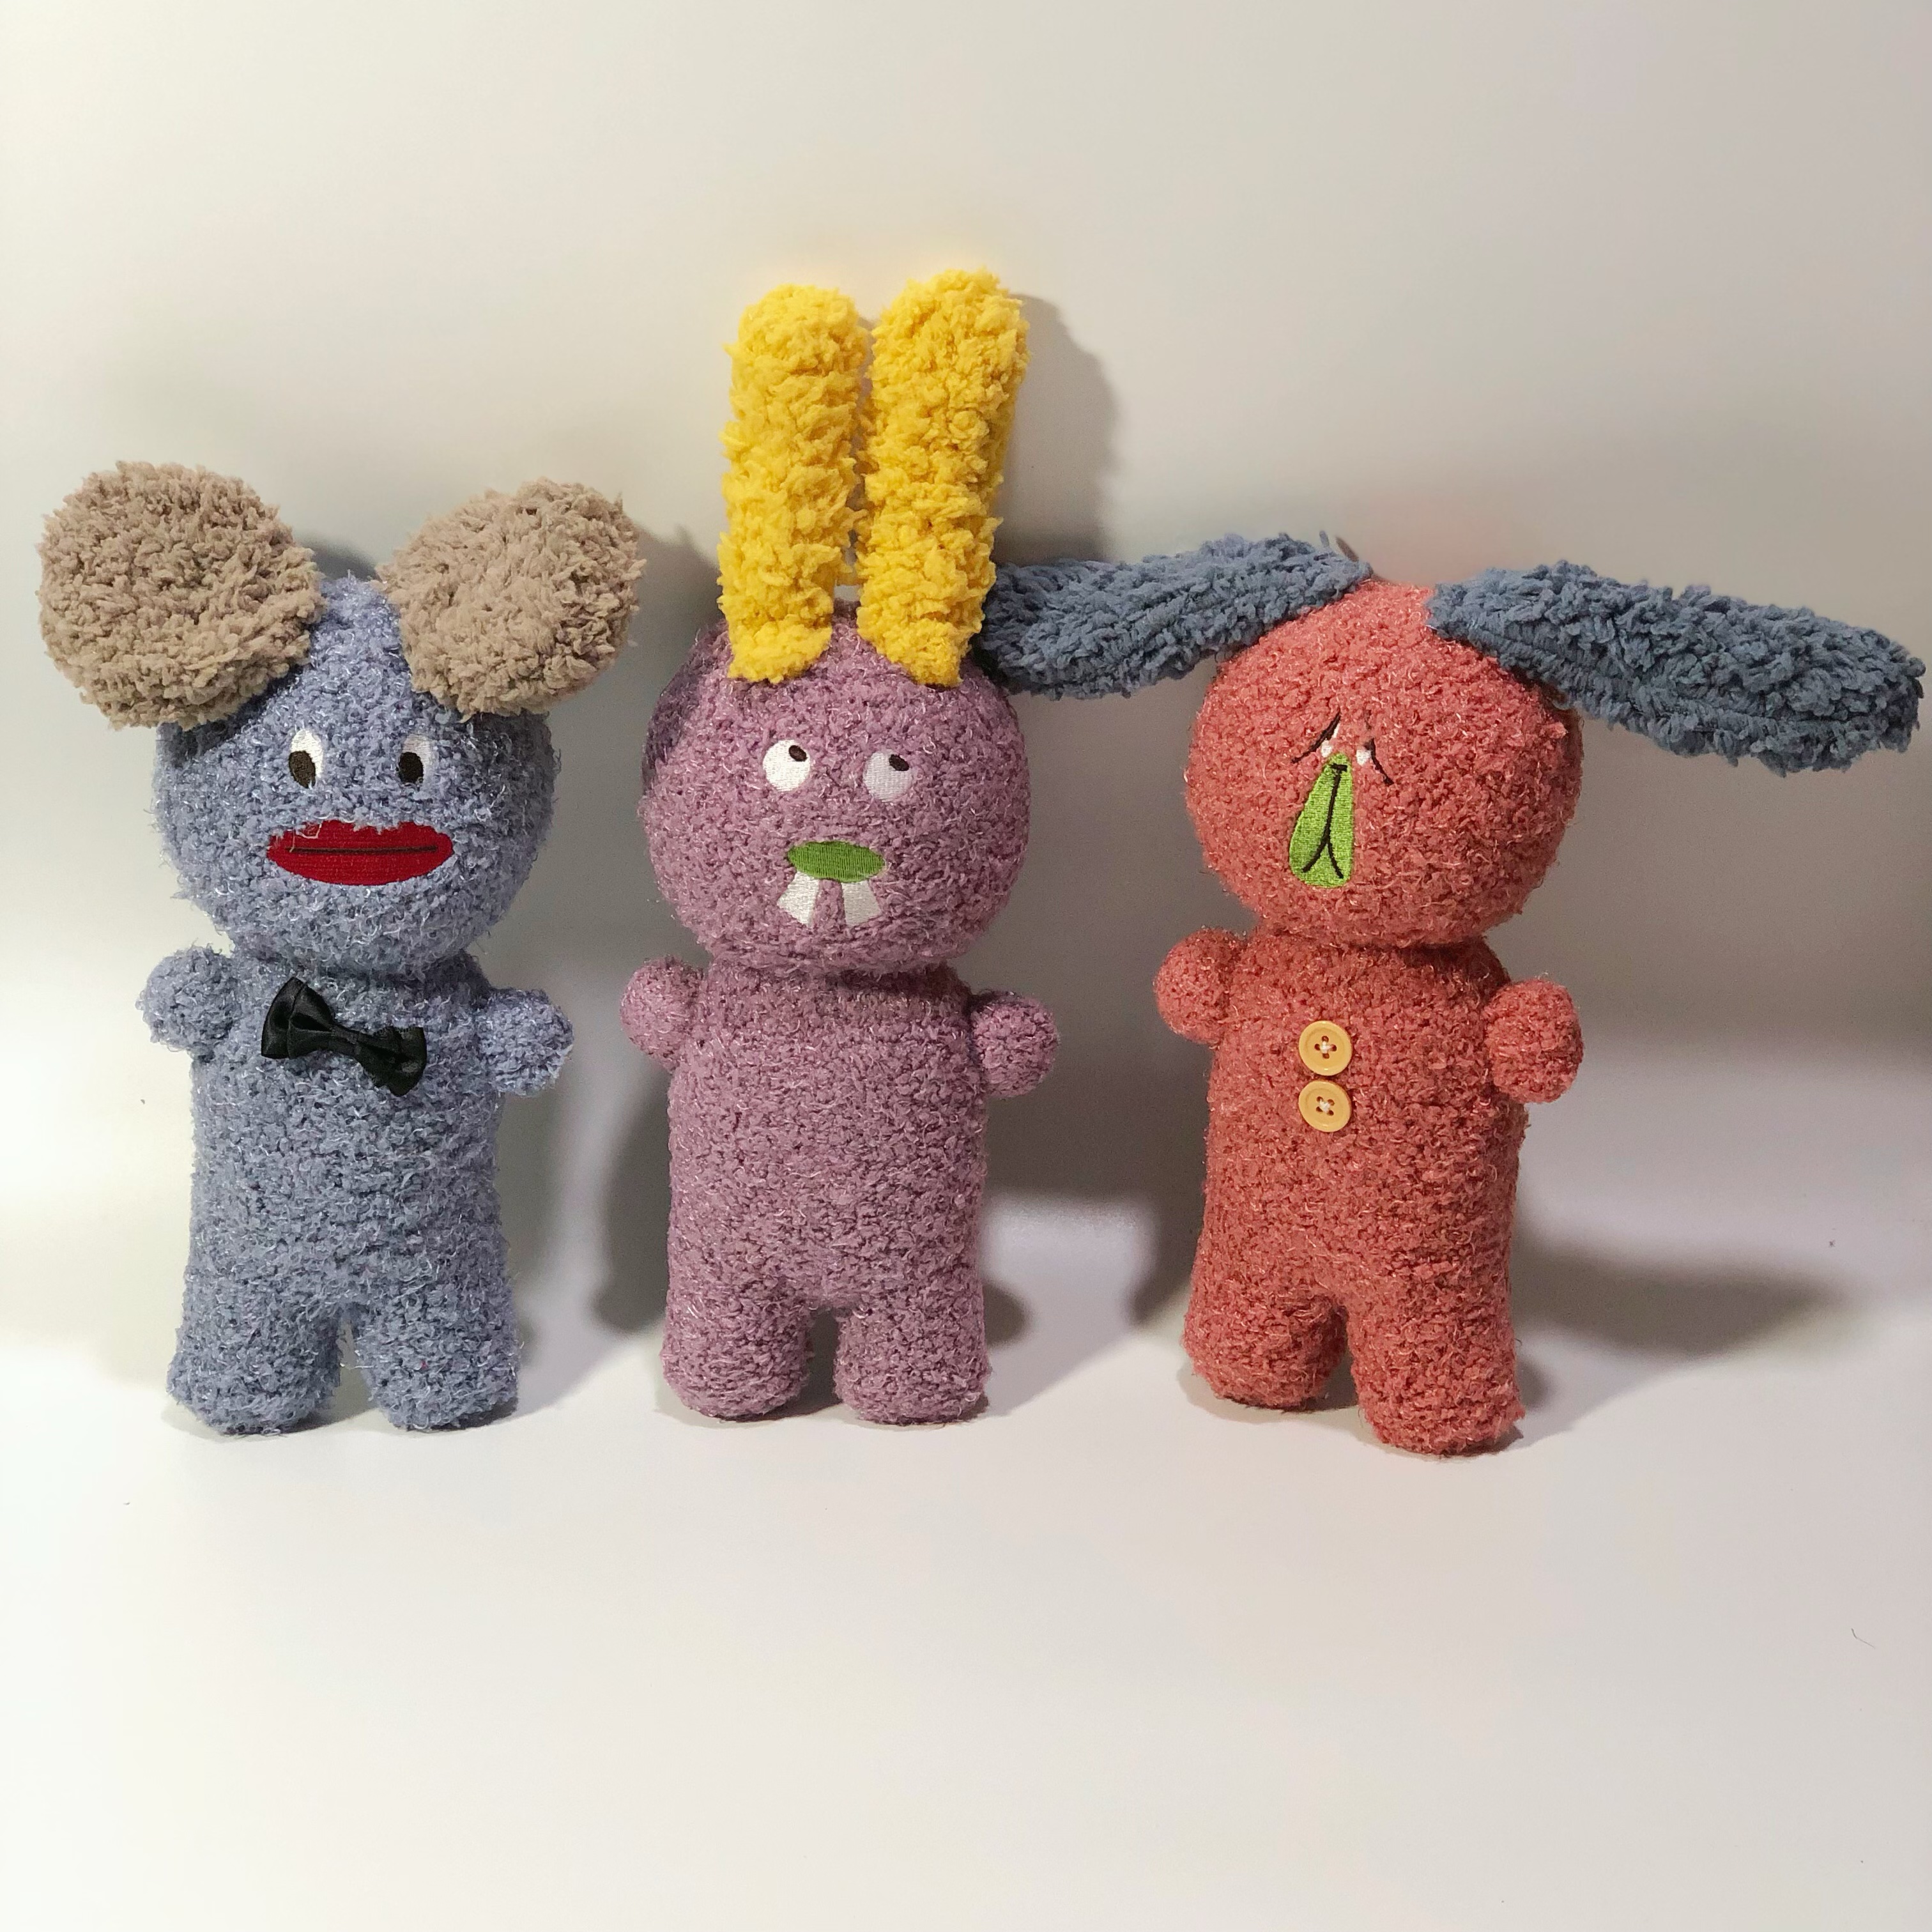 原创作品袜子娃娃手工diy材料包 手工制作学习教程玩偶成品定制